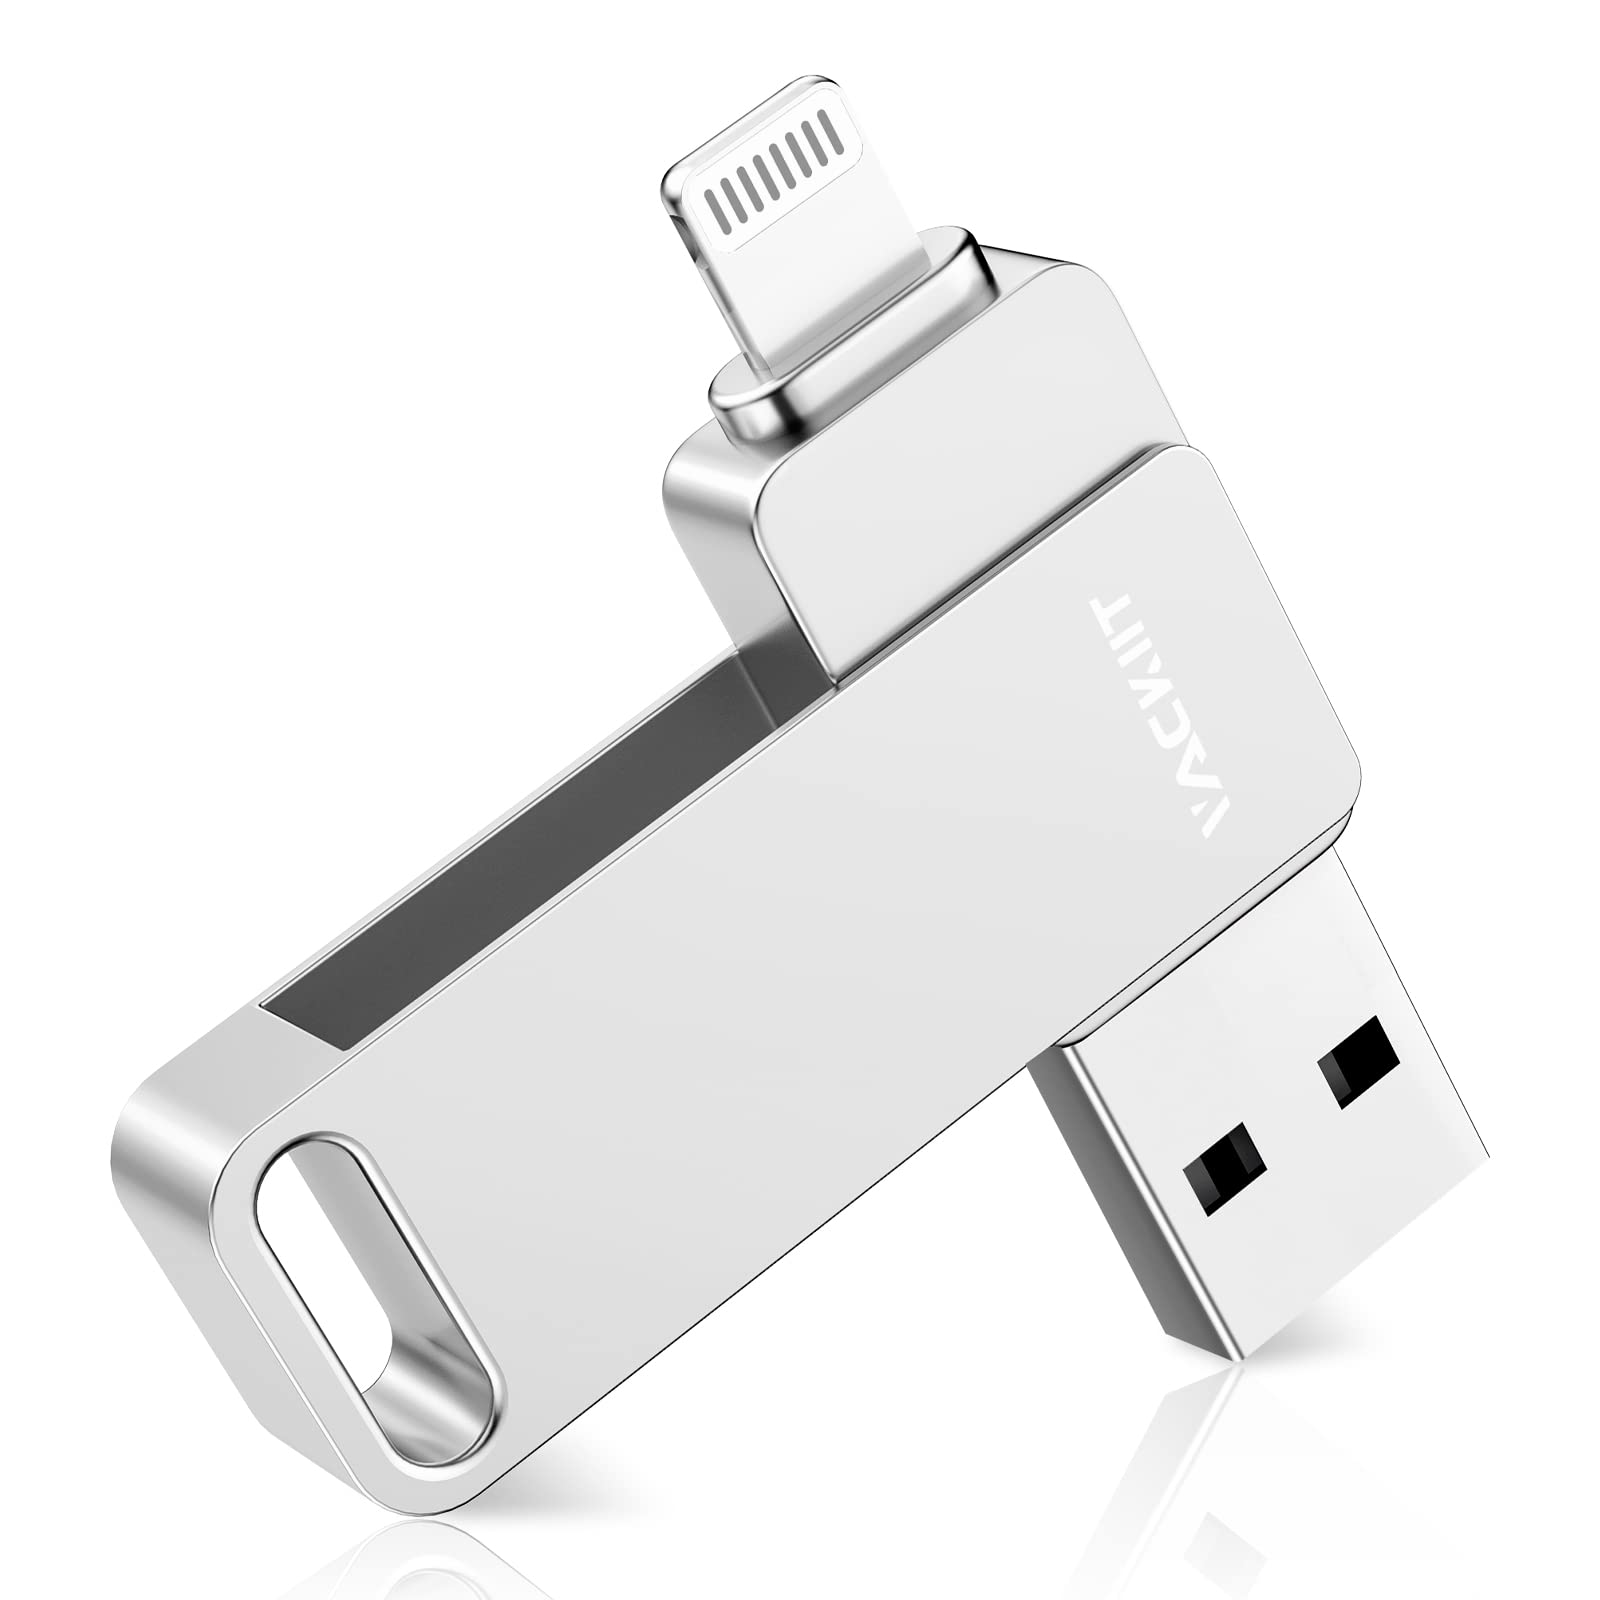 【送料無料】USB Type C HDMI VGA 変換 アダプタ 5in1 USB C ハブ 4k HDMI/VGA//USB3.0/PD充電ポート/3.5mmオーディオ UHD コンバーター Switch/Windows/MAC/Linux/ニンテンドースイッチデバイス対応急速充電 熱対策